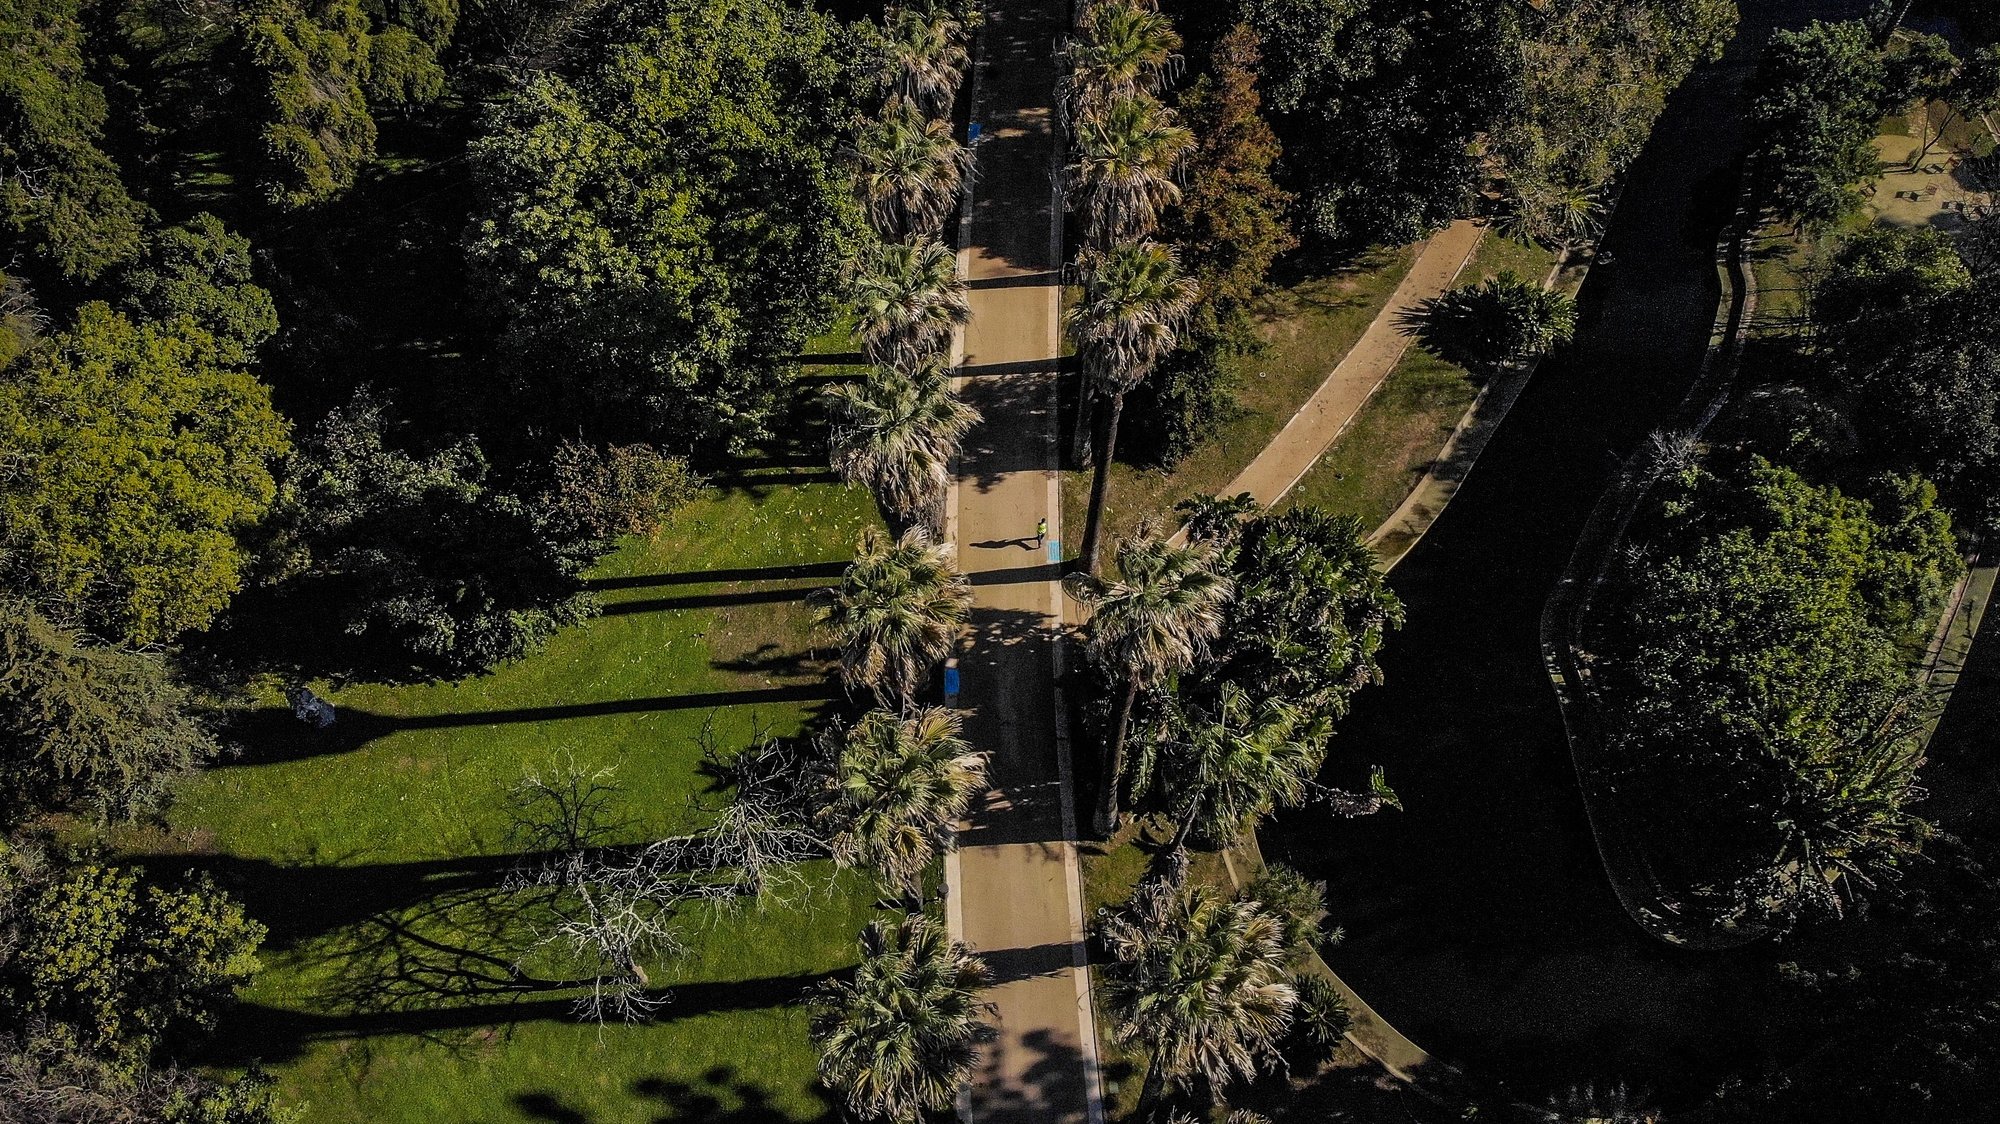 Um ano depois de ter encerrado, o Jardim Botânico Tropical, em Belém, Lisboa, abre portas no sábado com espaços renovados, desde caminhos, condutas de água e de rega, 21 de janeiro de 2020. (ACOMPANHA TEXTO DO DIA 23 DE JANEIRO DE 2020) MÁRIO CRUZ/LUSA